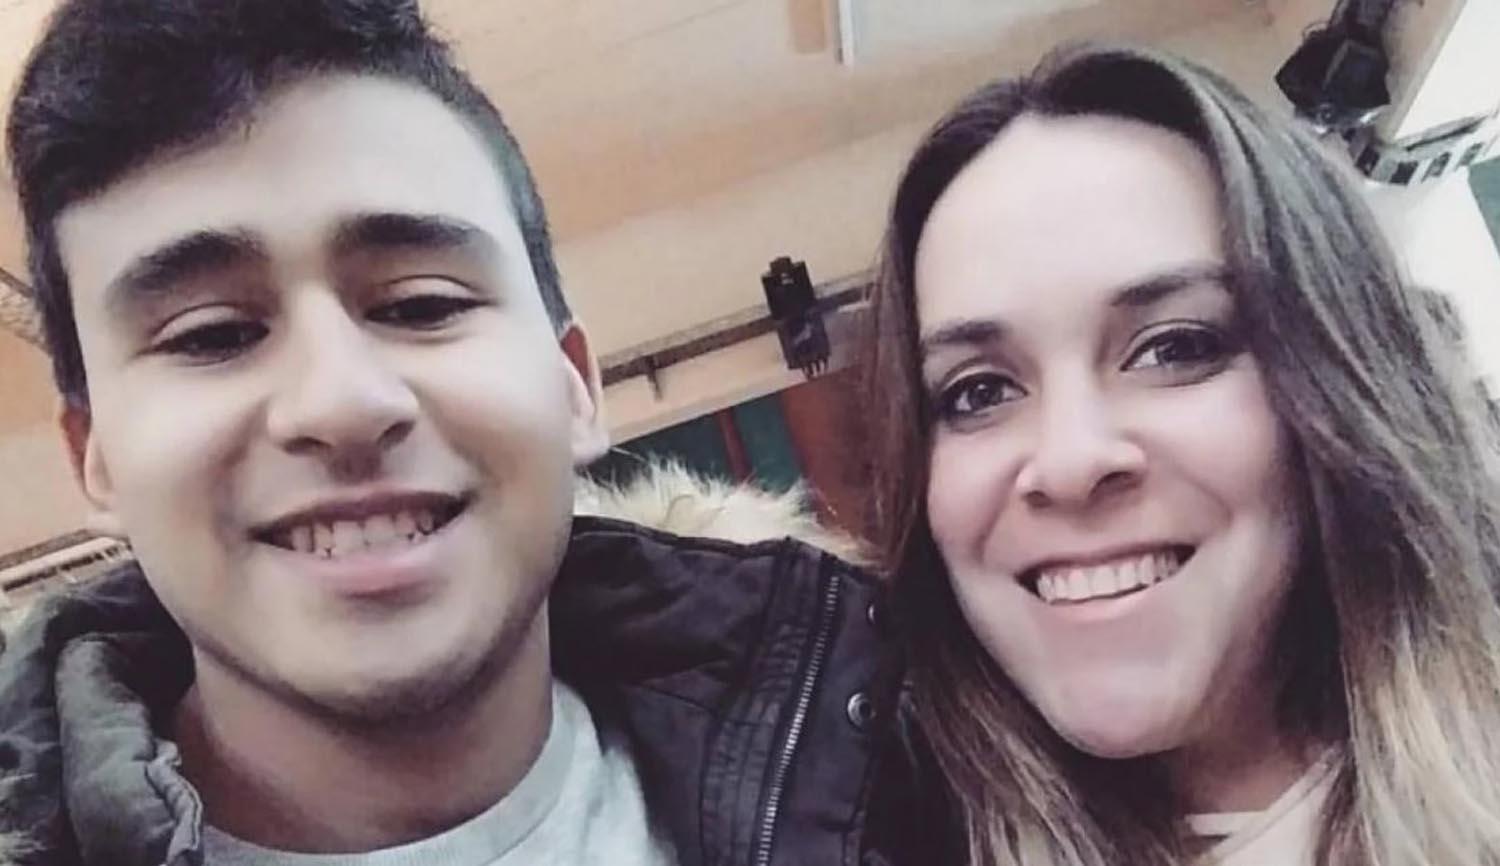 INSEGURIDAD. Tamara y su pareja, las víctimas del ataque en Buenos Aires